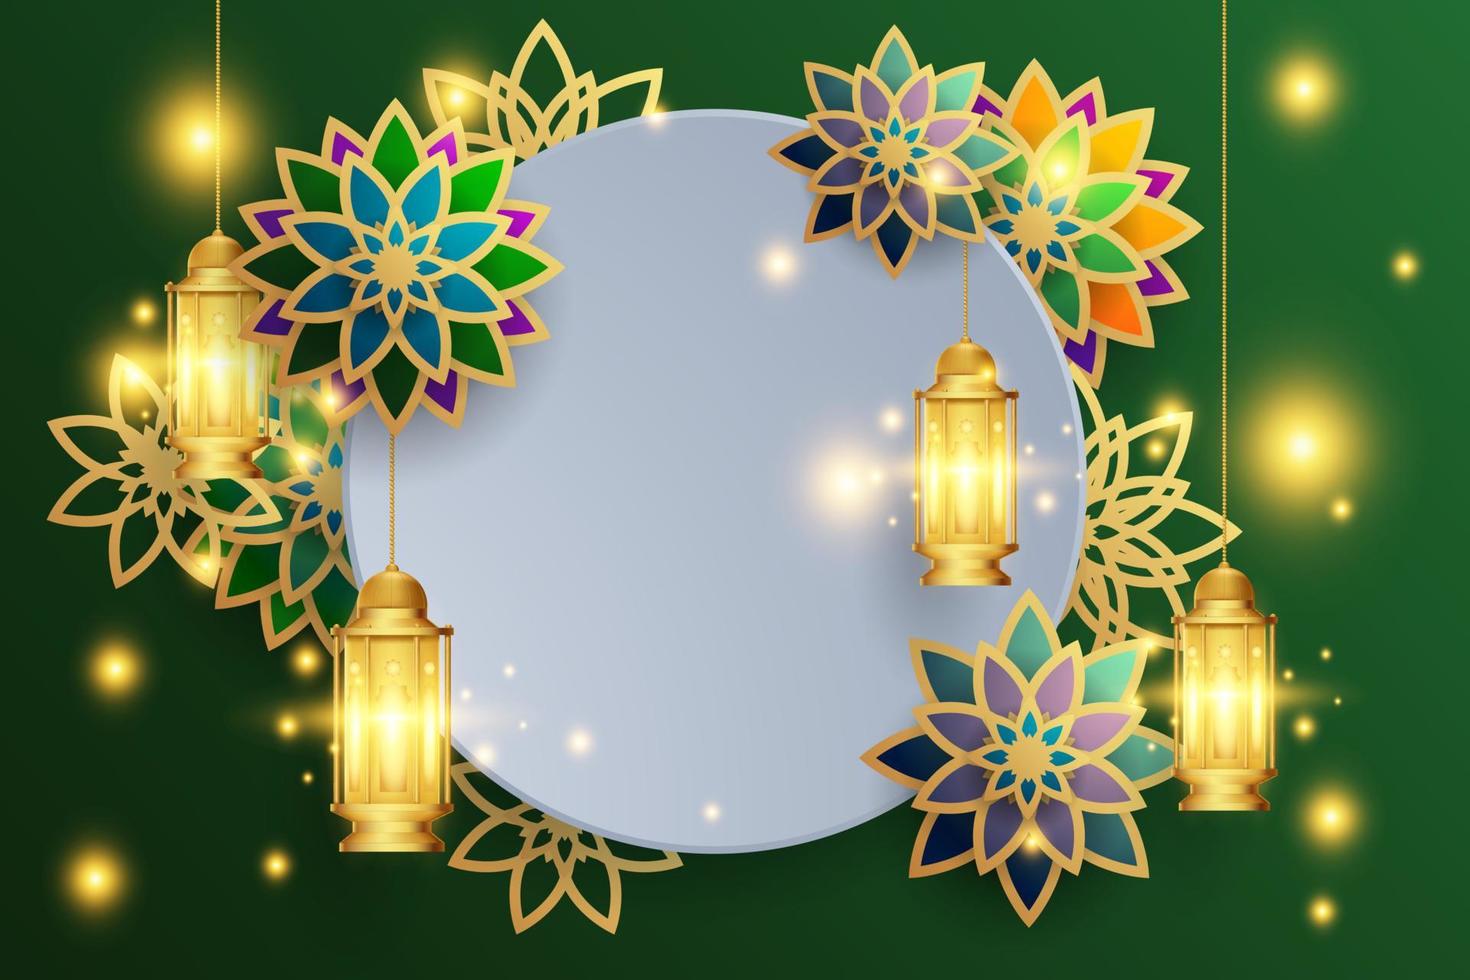 eid mubarak grußkartenhintergrund mit islamischer verzierungsvektorillustration vektor